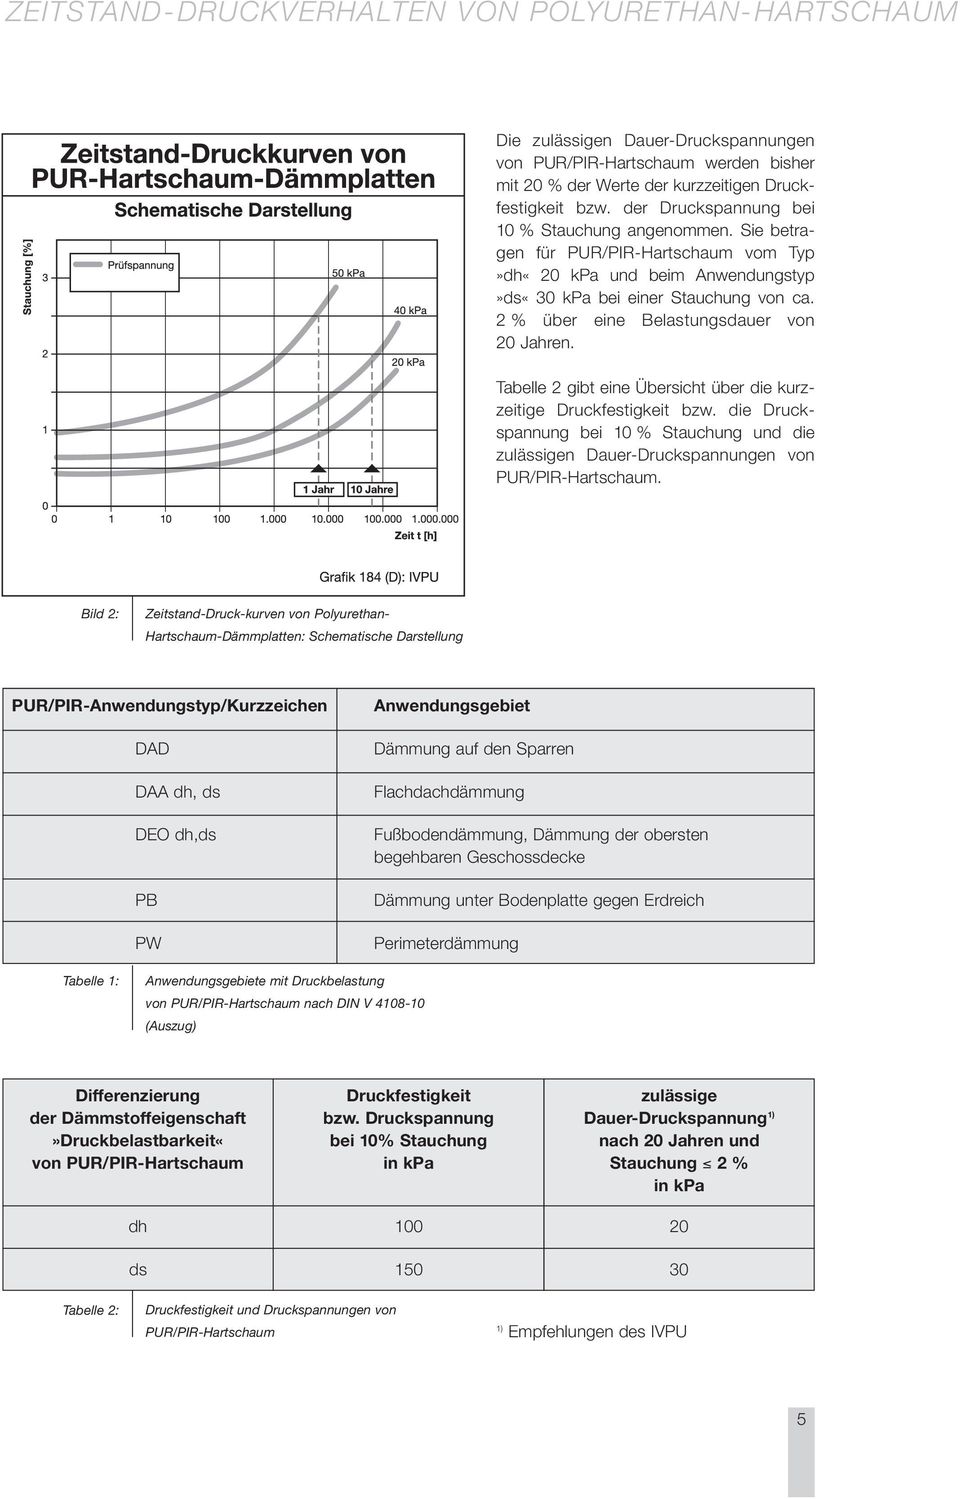 Tabelle 2 gibt eine Übersicht über die kurzzeitige Druckfestigkeit bzw. die Druckspannung bei 10 % Stauchung und die zulässigen Dauer-Druckspannungen von PUR/PIR-Hartschaum.